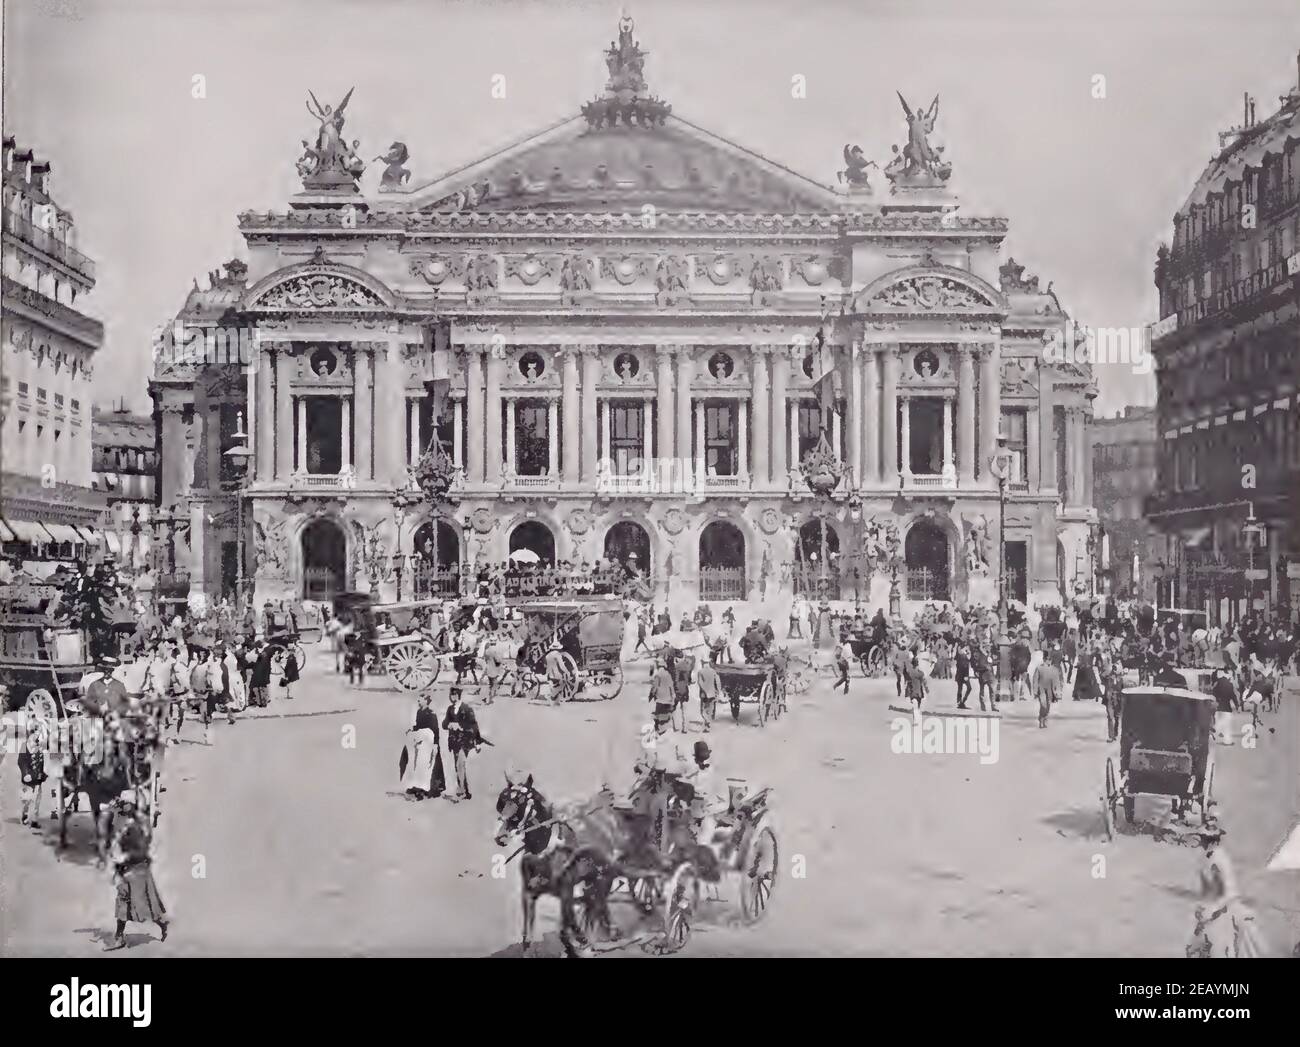 Fotografia d'epoca del Teatro dell'Opera di Parigi nel 1892. Veicoli trainati da cavalli e passanti vestiti alla moda del tempo. Foto Stock